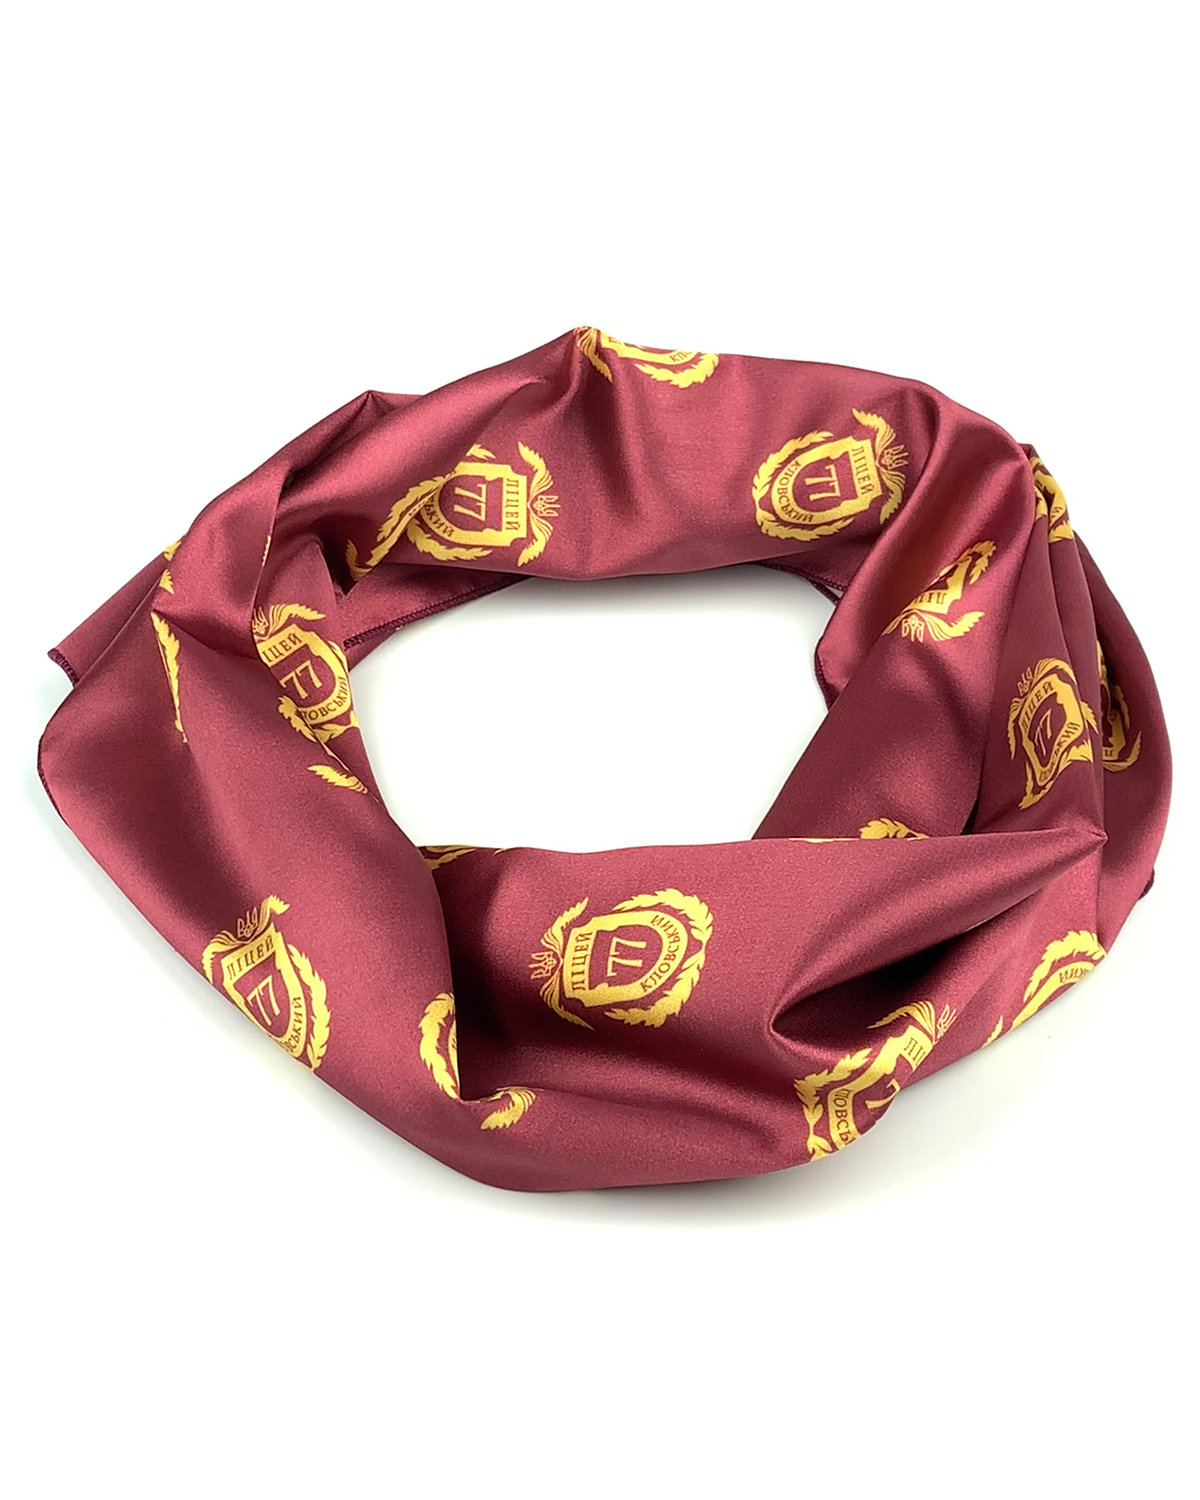 Атласный шарф с логотипом лицея